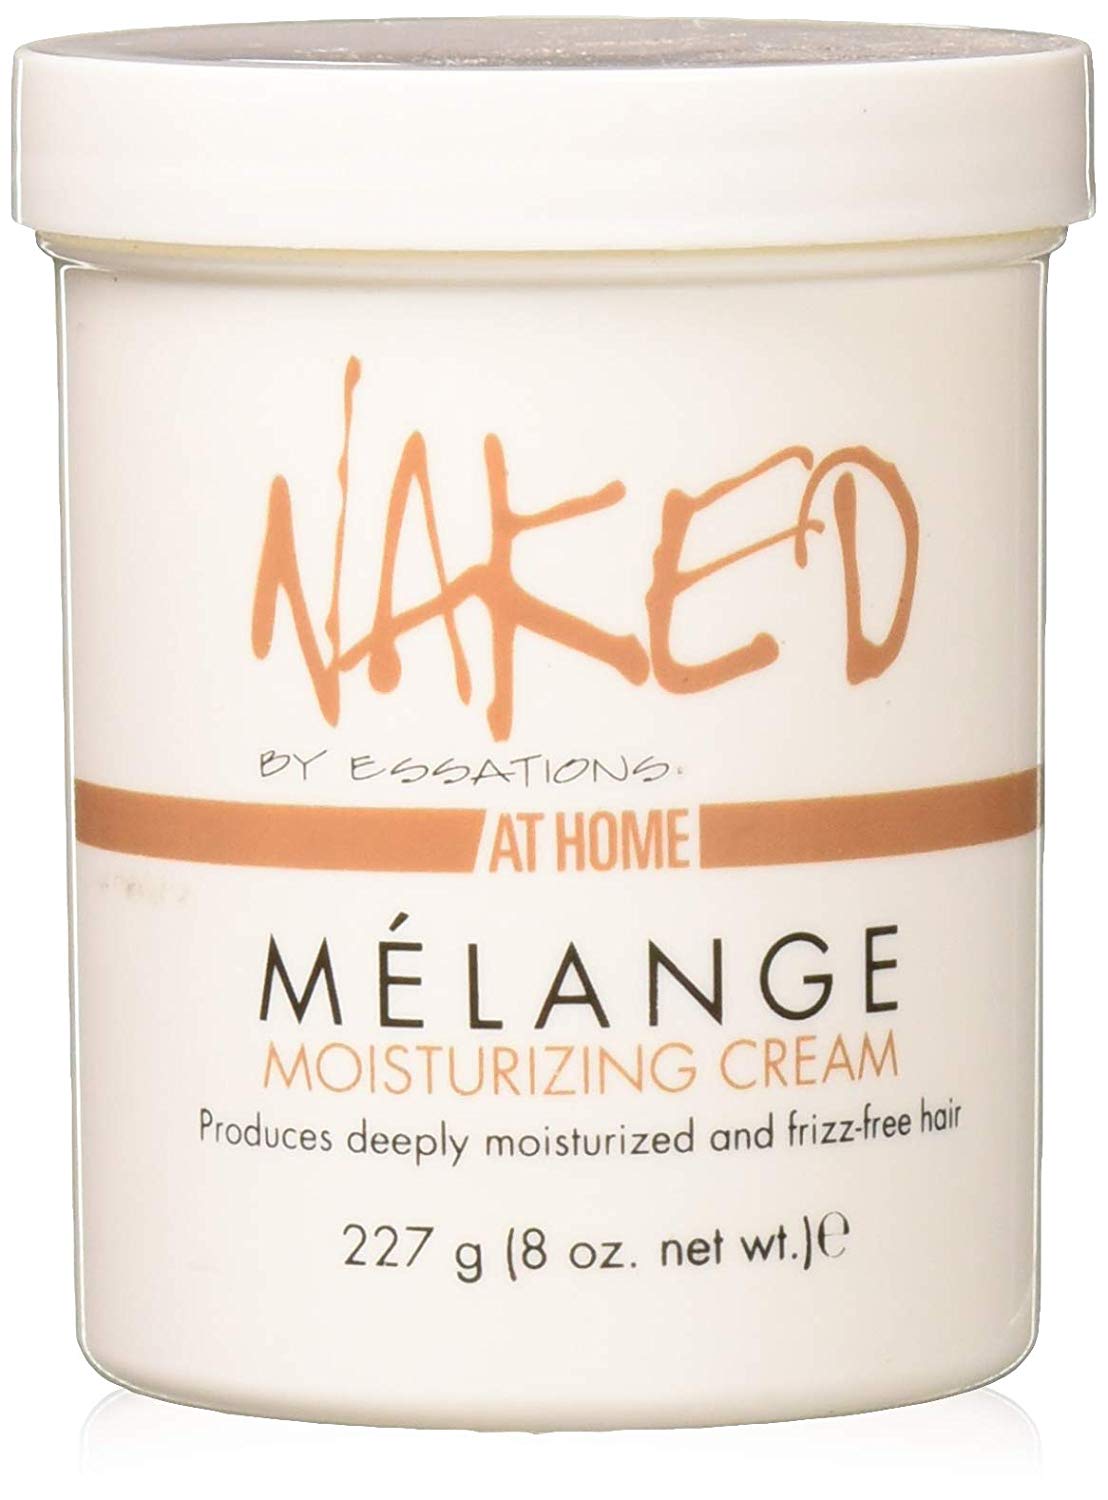 Naked by Essations Melange Moisturizing Cream, 8 Oz